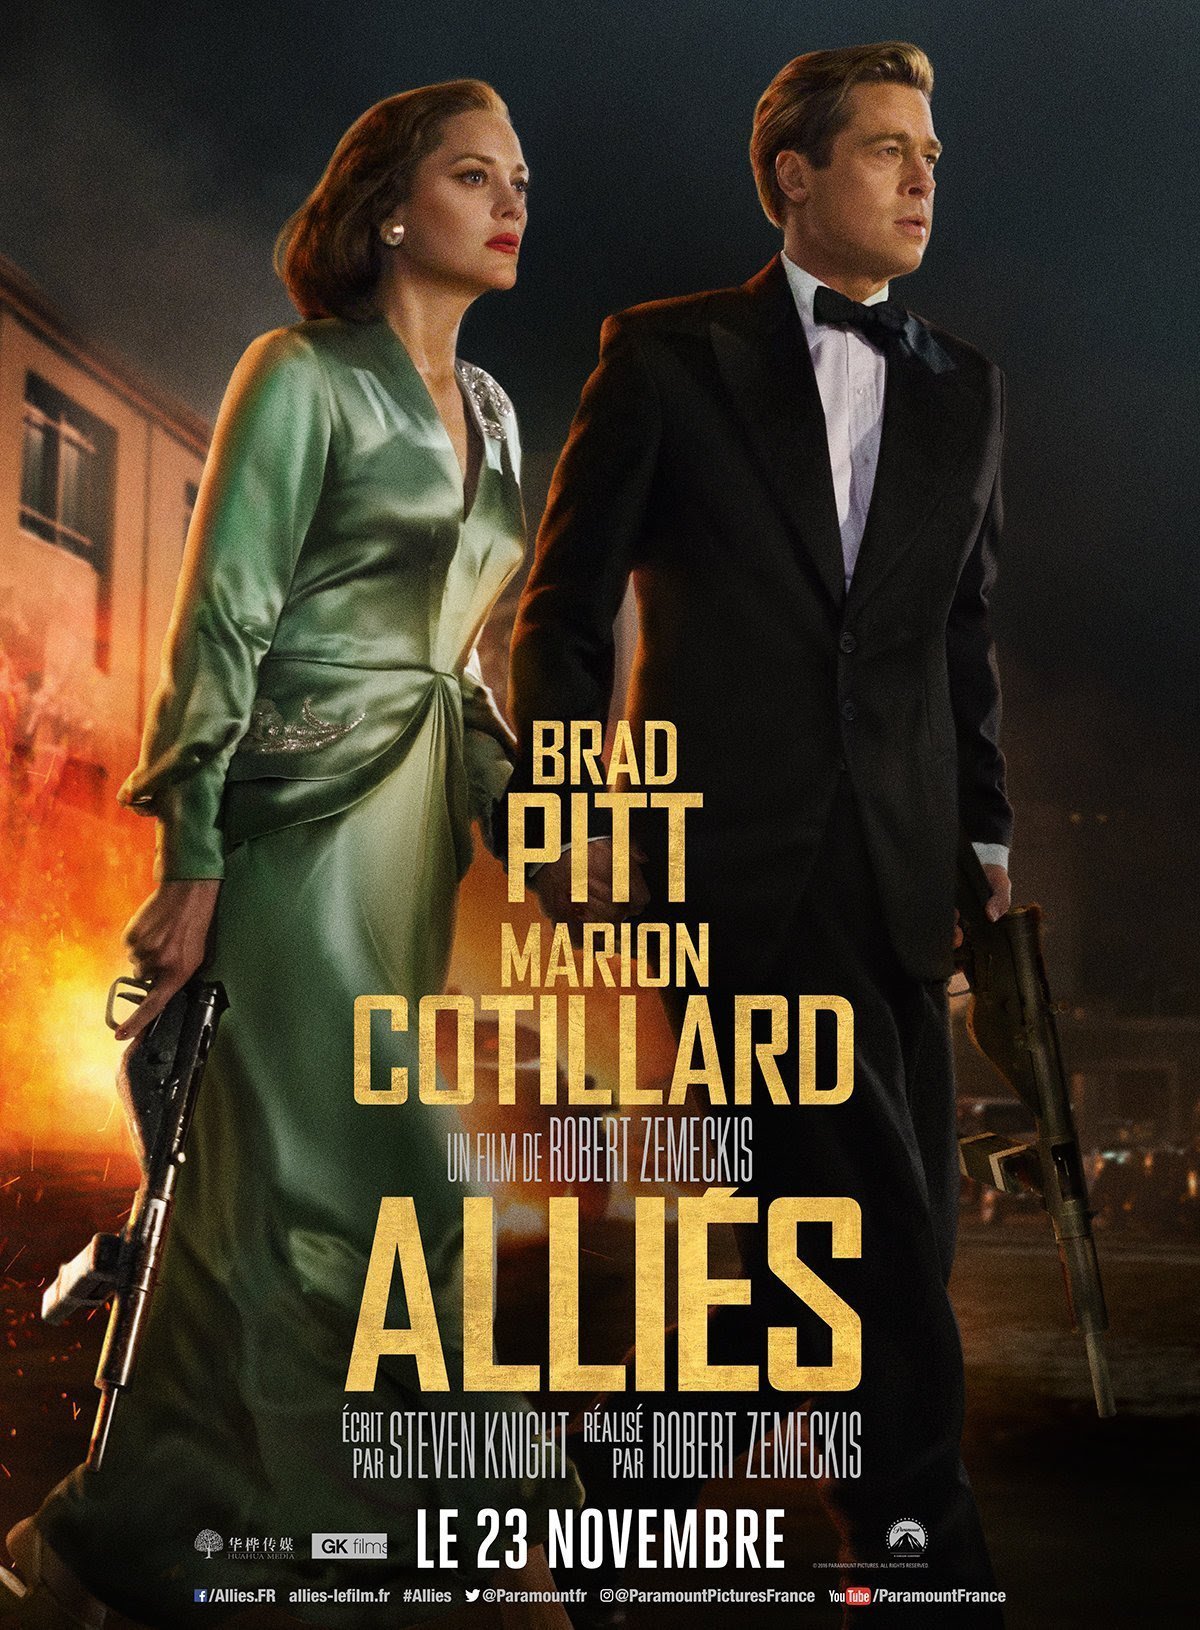 Affiche française d'Alliés avec Brad Pitt et Marion Cotillard